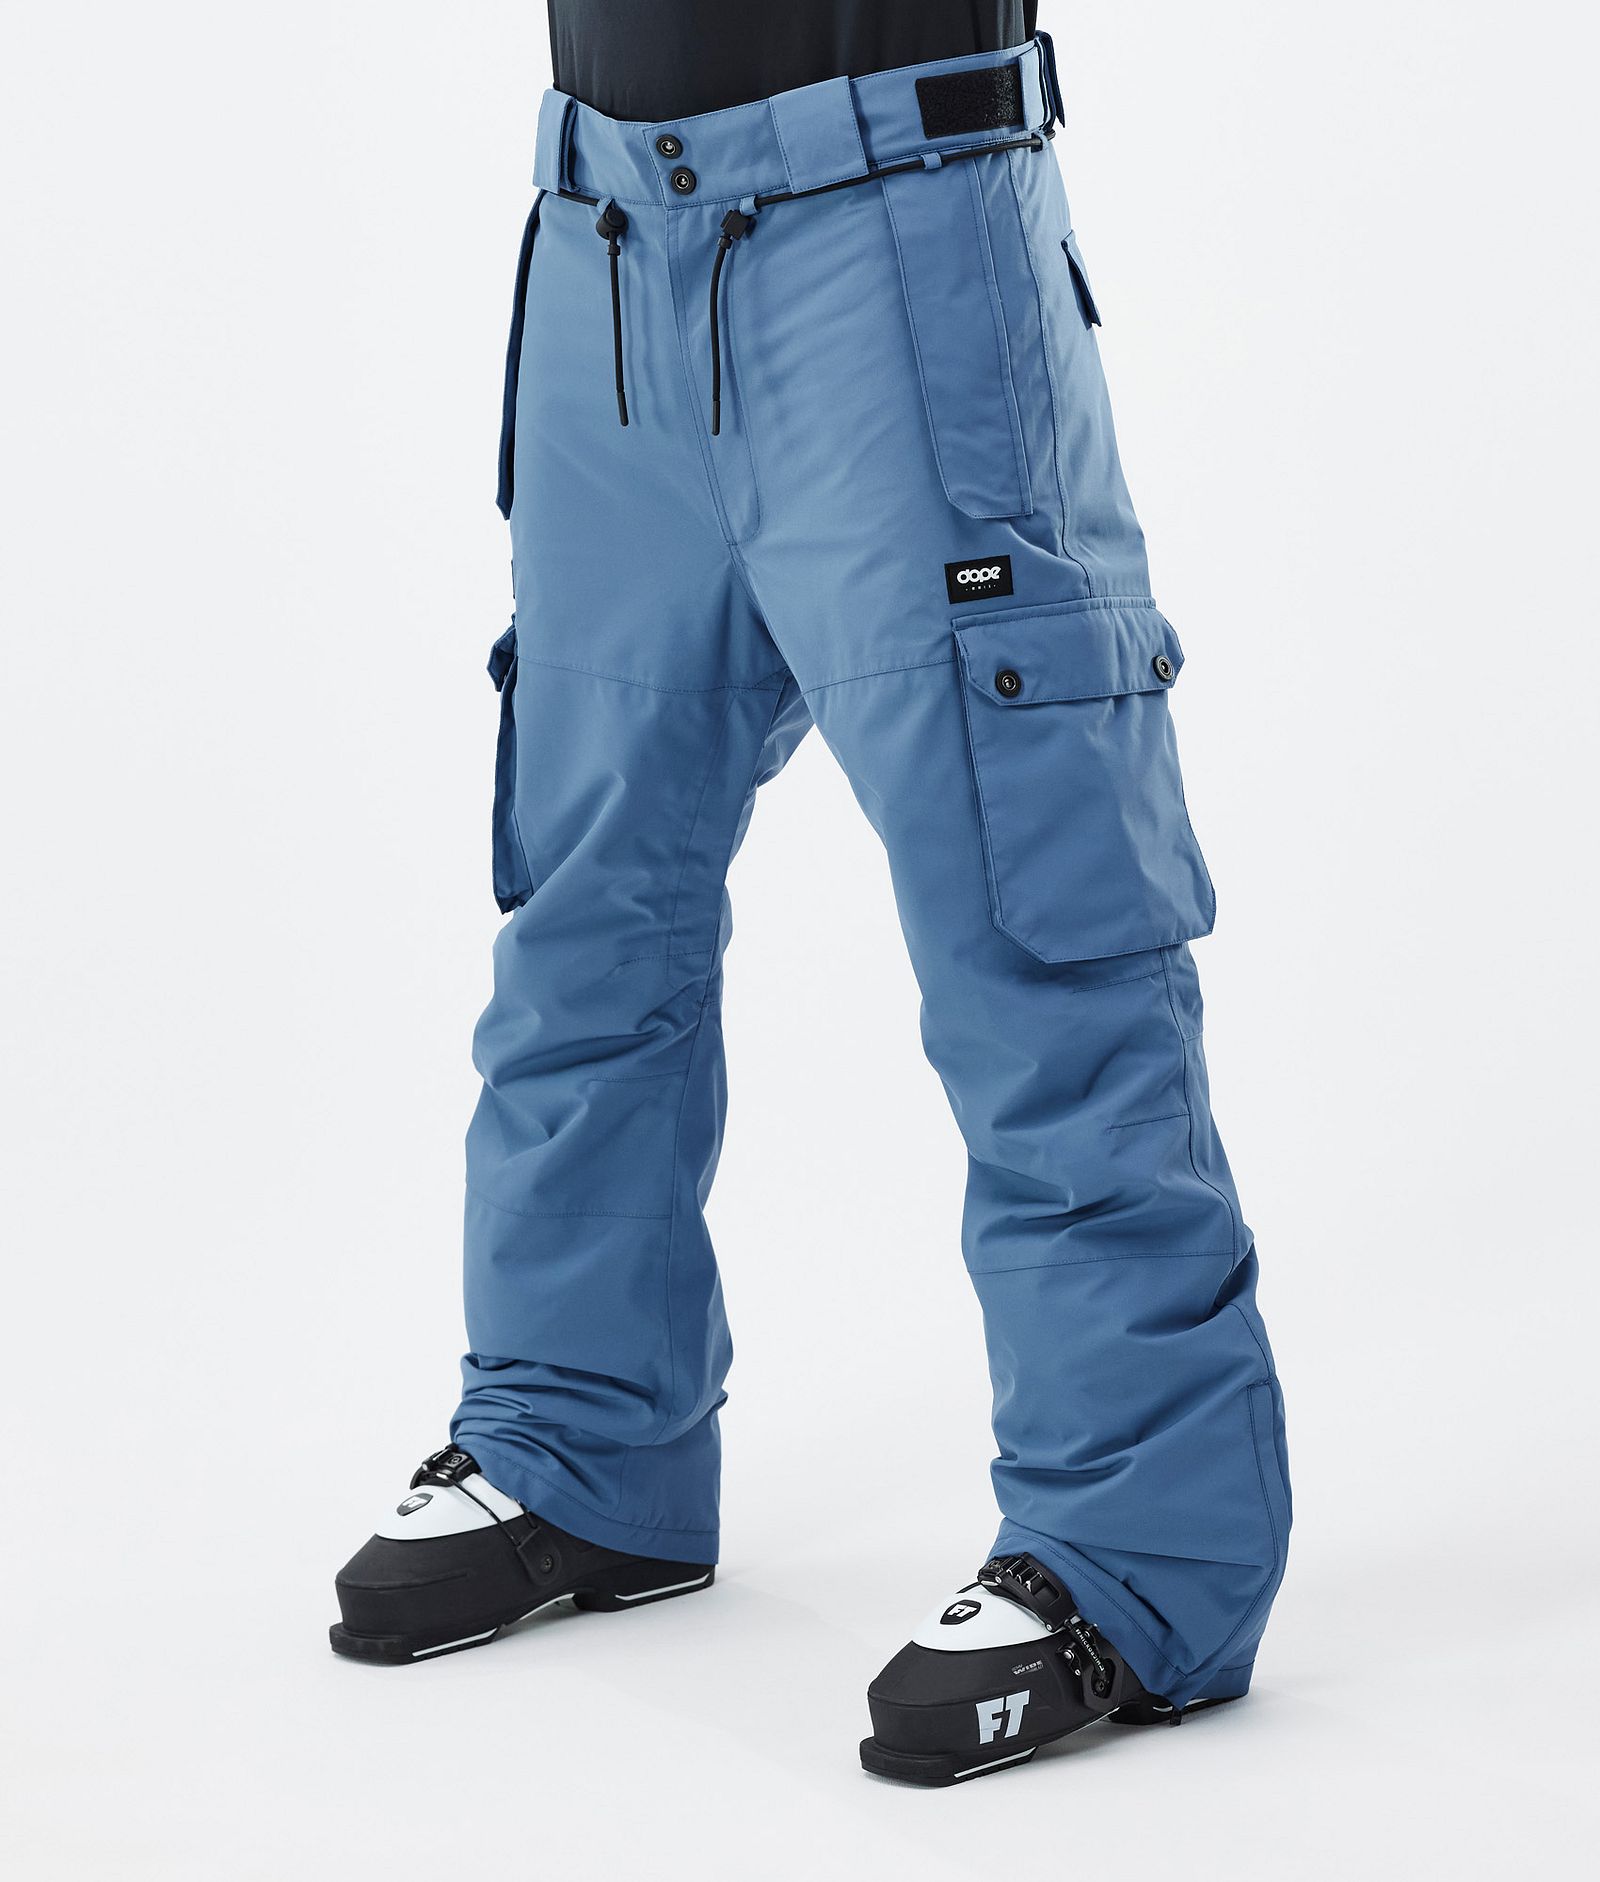 Iconic Pantaloni Sci Uomo Blue Steel, Immagine 1 di 7